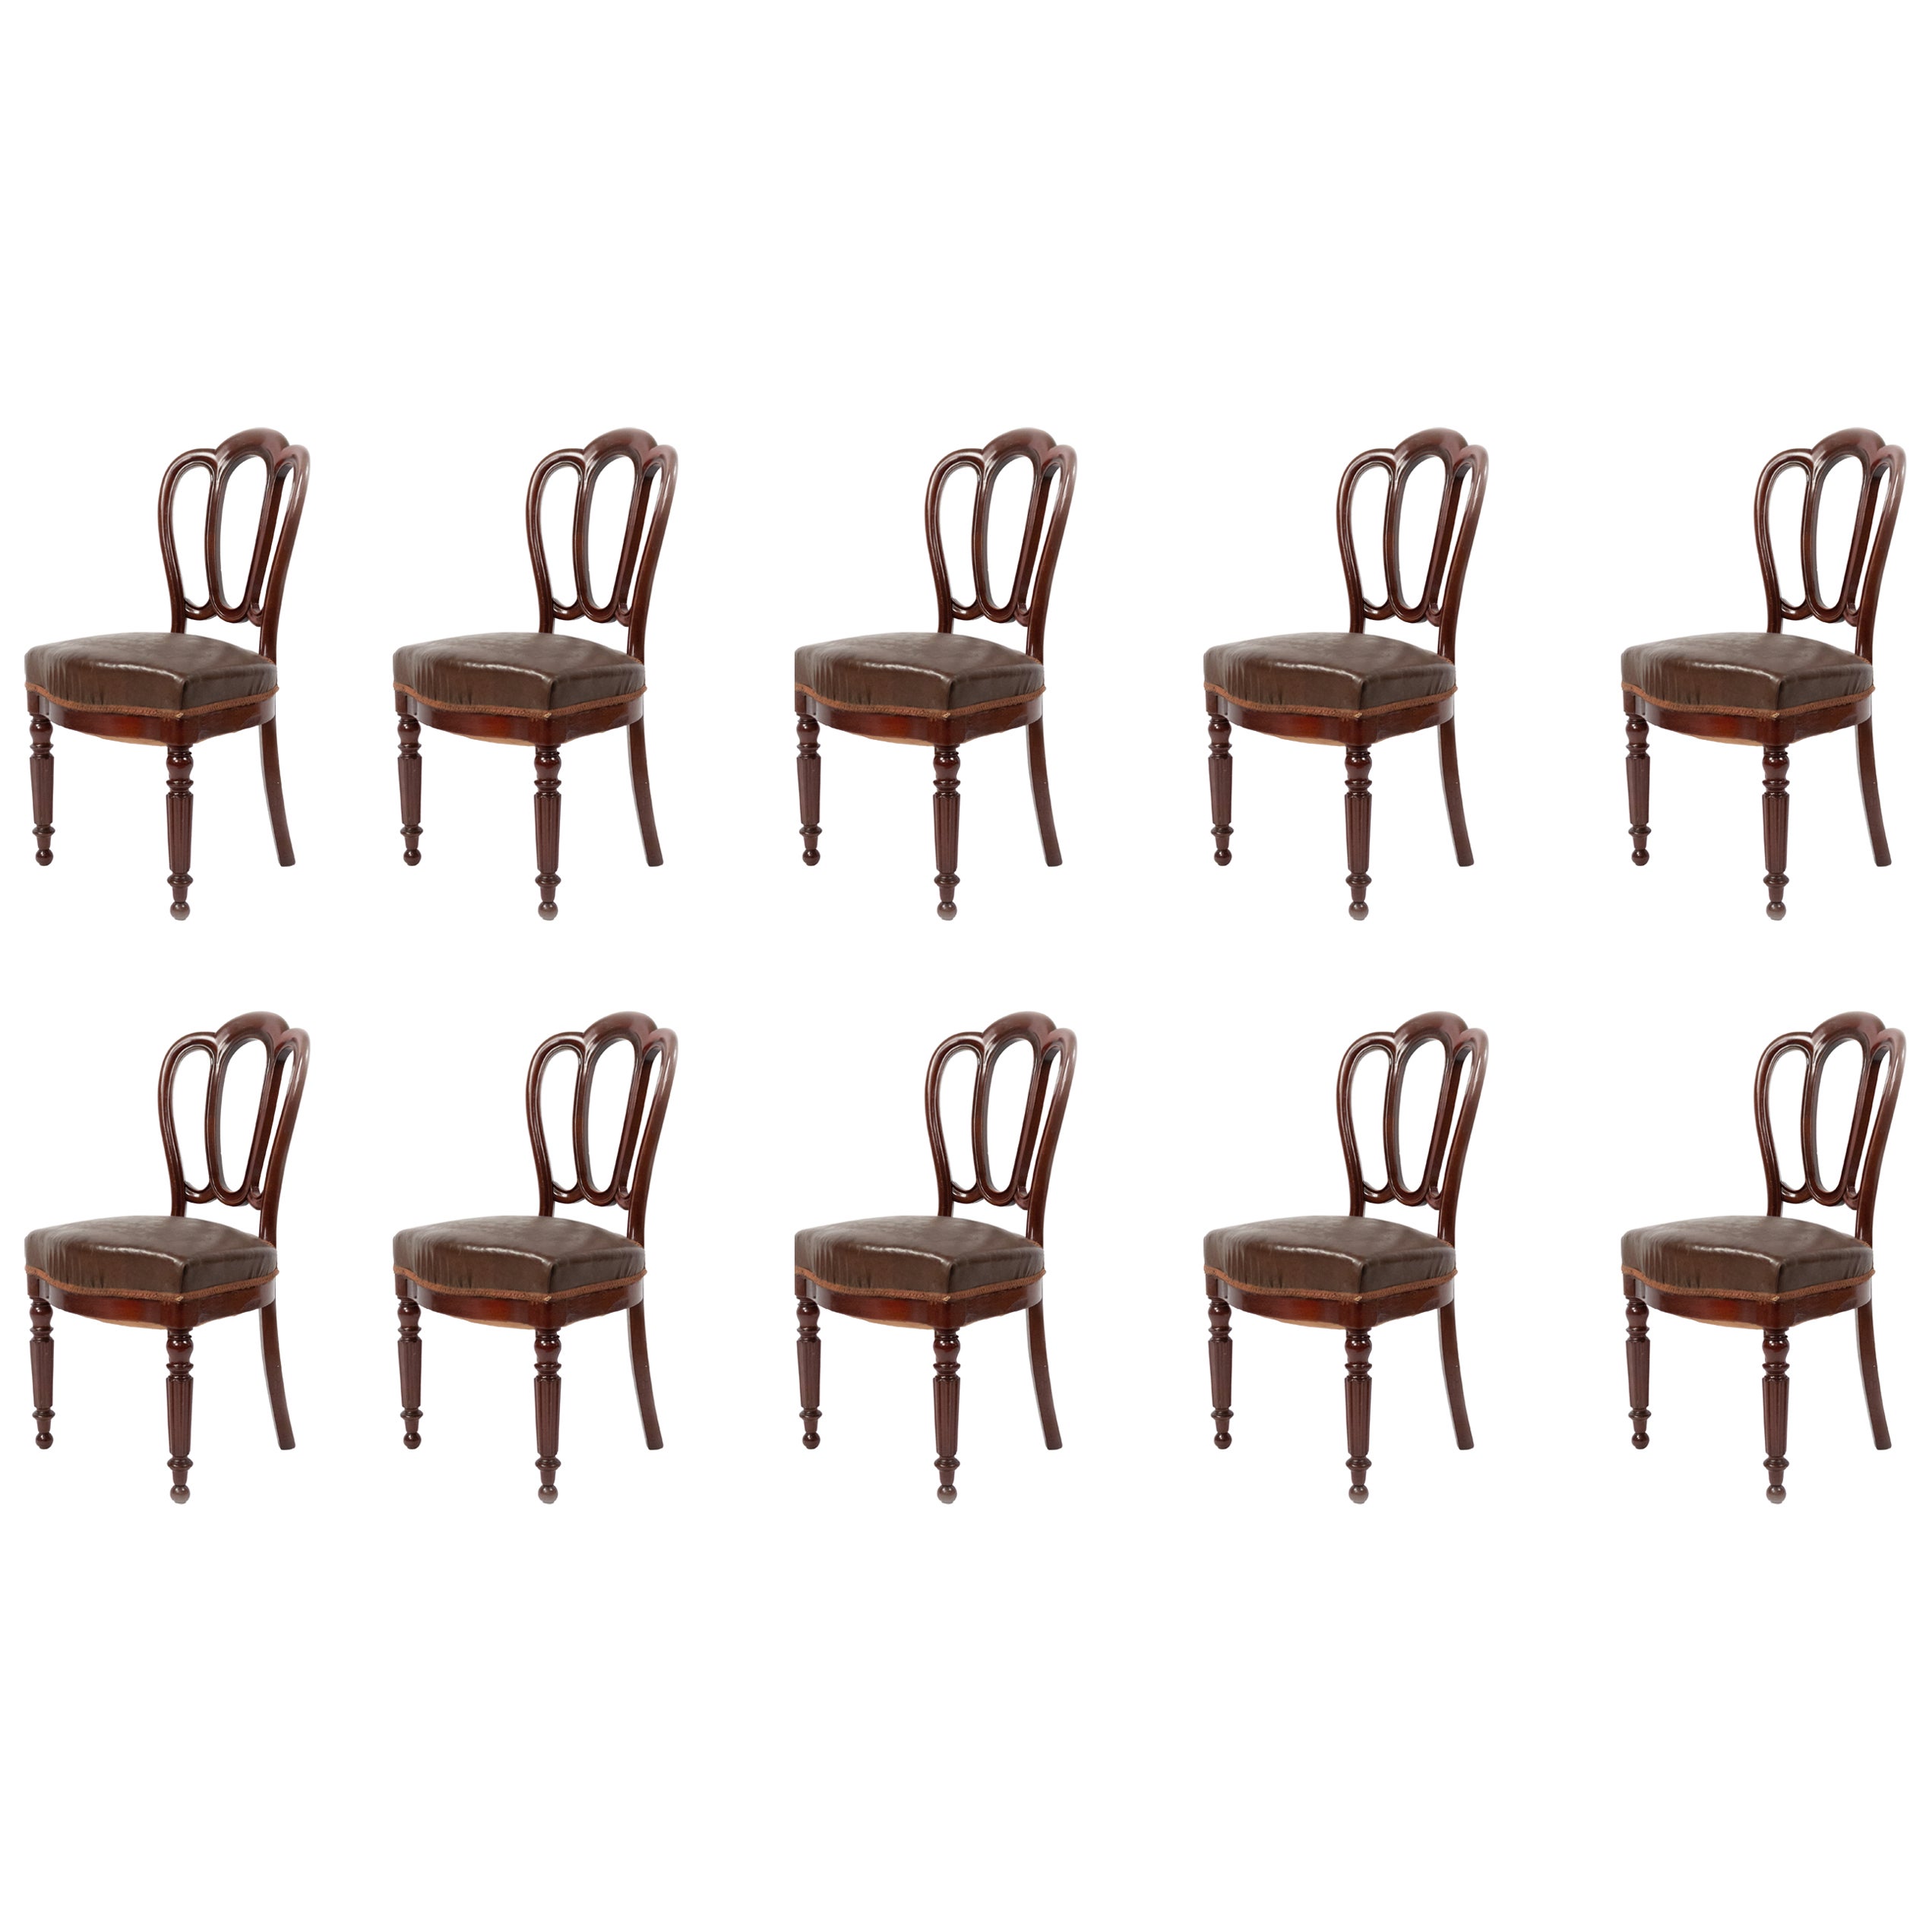 Satz von 10 englischen viktorianischen Mahagoni-Esszimmerstühlen